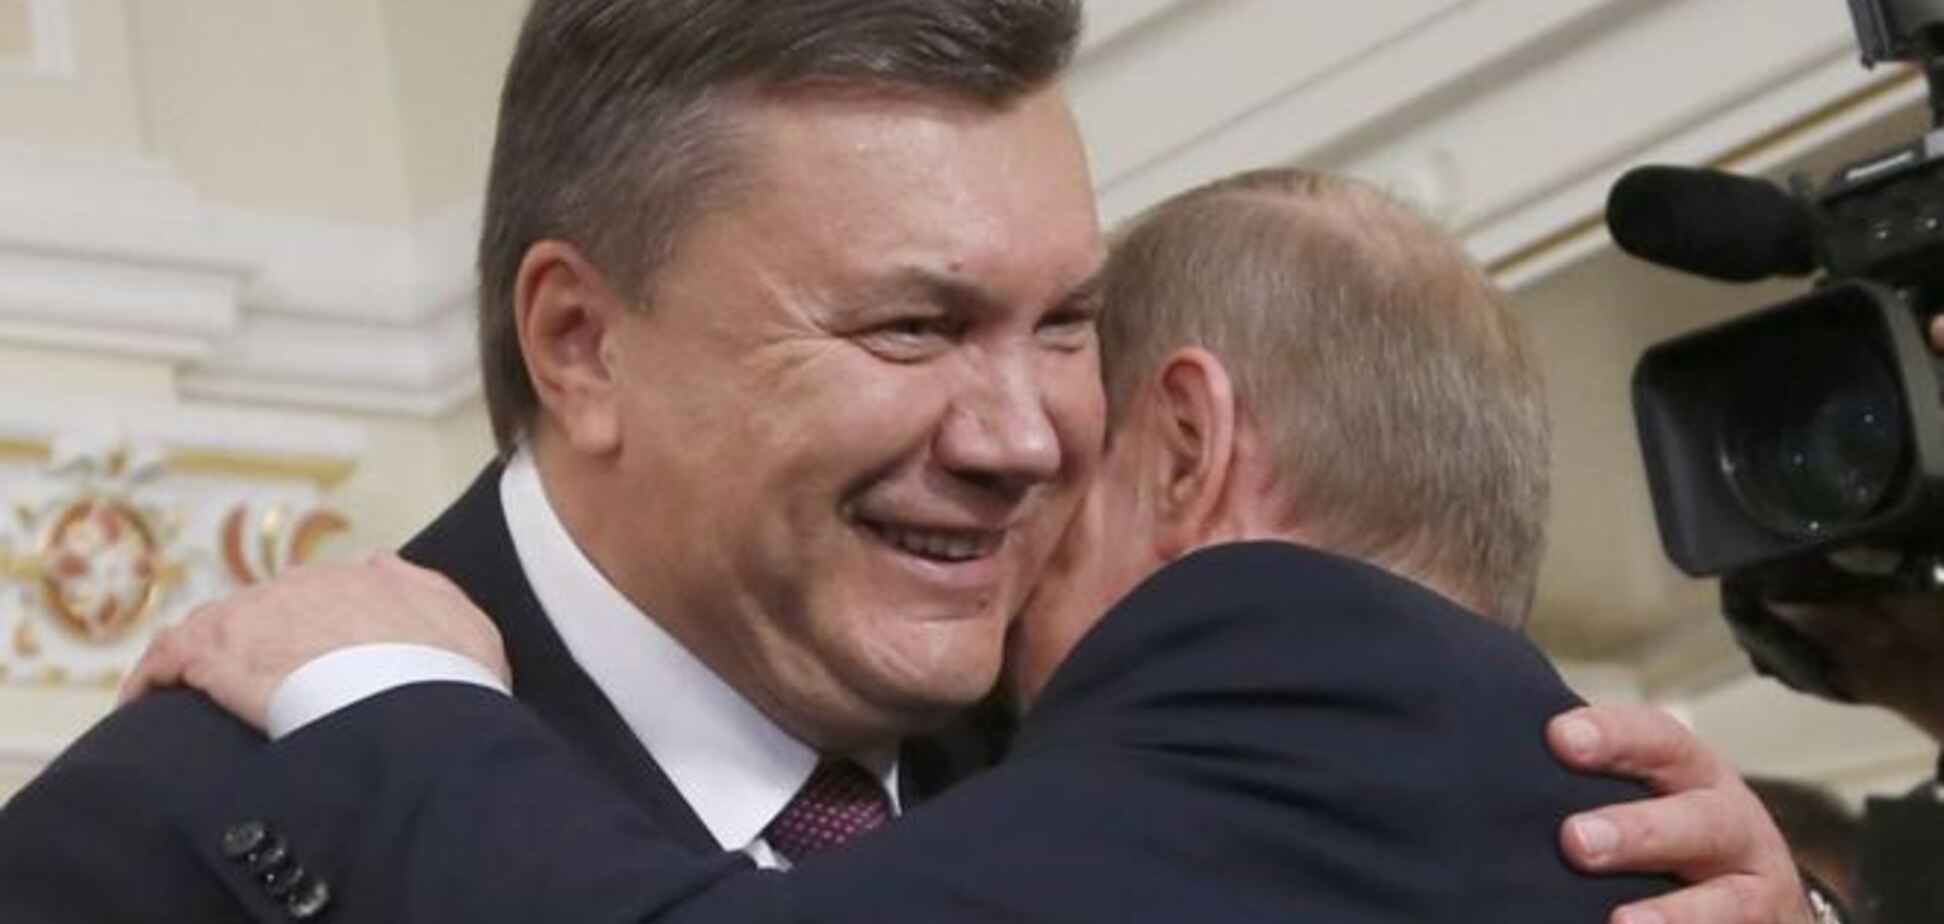 Ненависть между народами посеяли Путин и Янукович - командир батальона 'Донбасс'